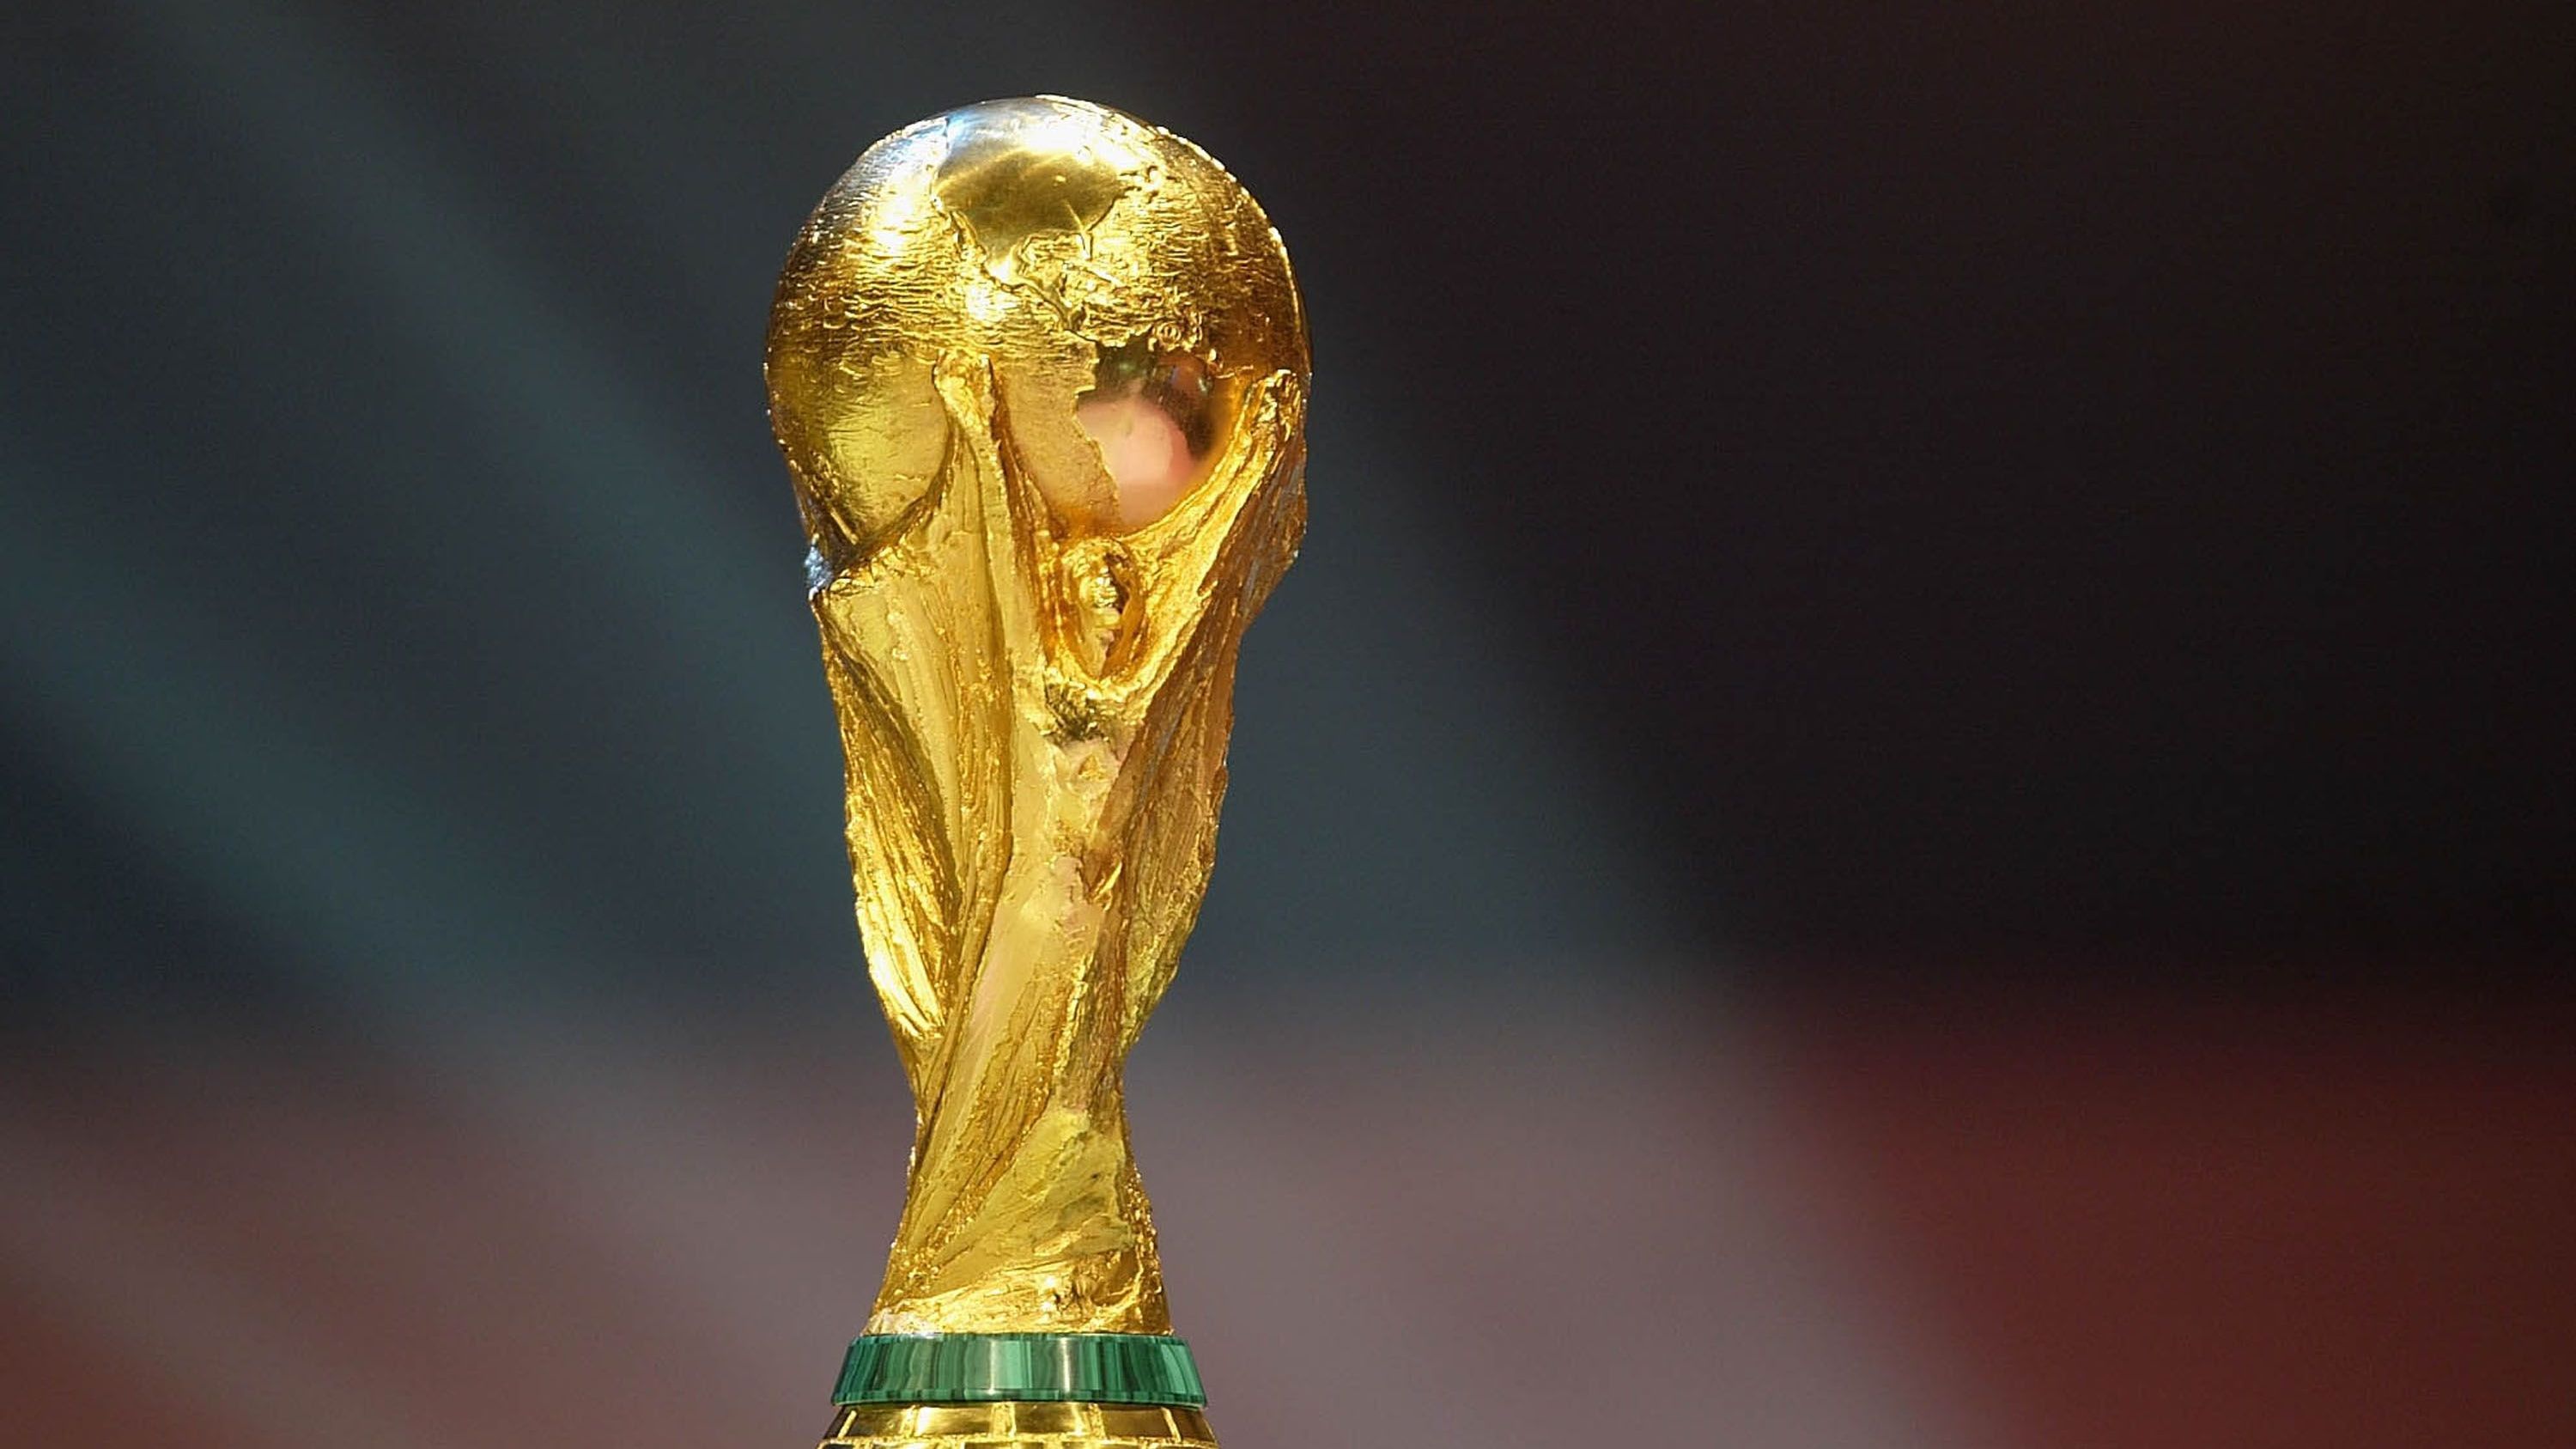 <strong>Platz 1: FIFA World Cup (Fußball)</strong><br>Über 4,5 Kilogramm 18-karätiges Gold. Zwei triumphierende Fußball-Spieler, die die Welt in ihren ausgestreckten Armen halten. Und die geschickte Sockel-Einarbeitung zweier Malachit-Halbedelstein-Kränze. Kommt schon, ihr findet doch auch, dass das die Nummer eins ist, oder? ODER?